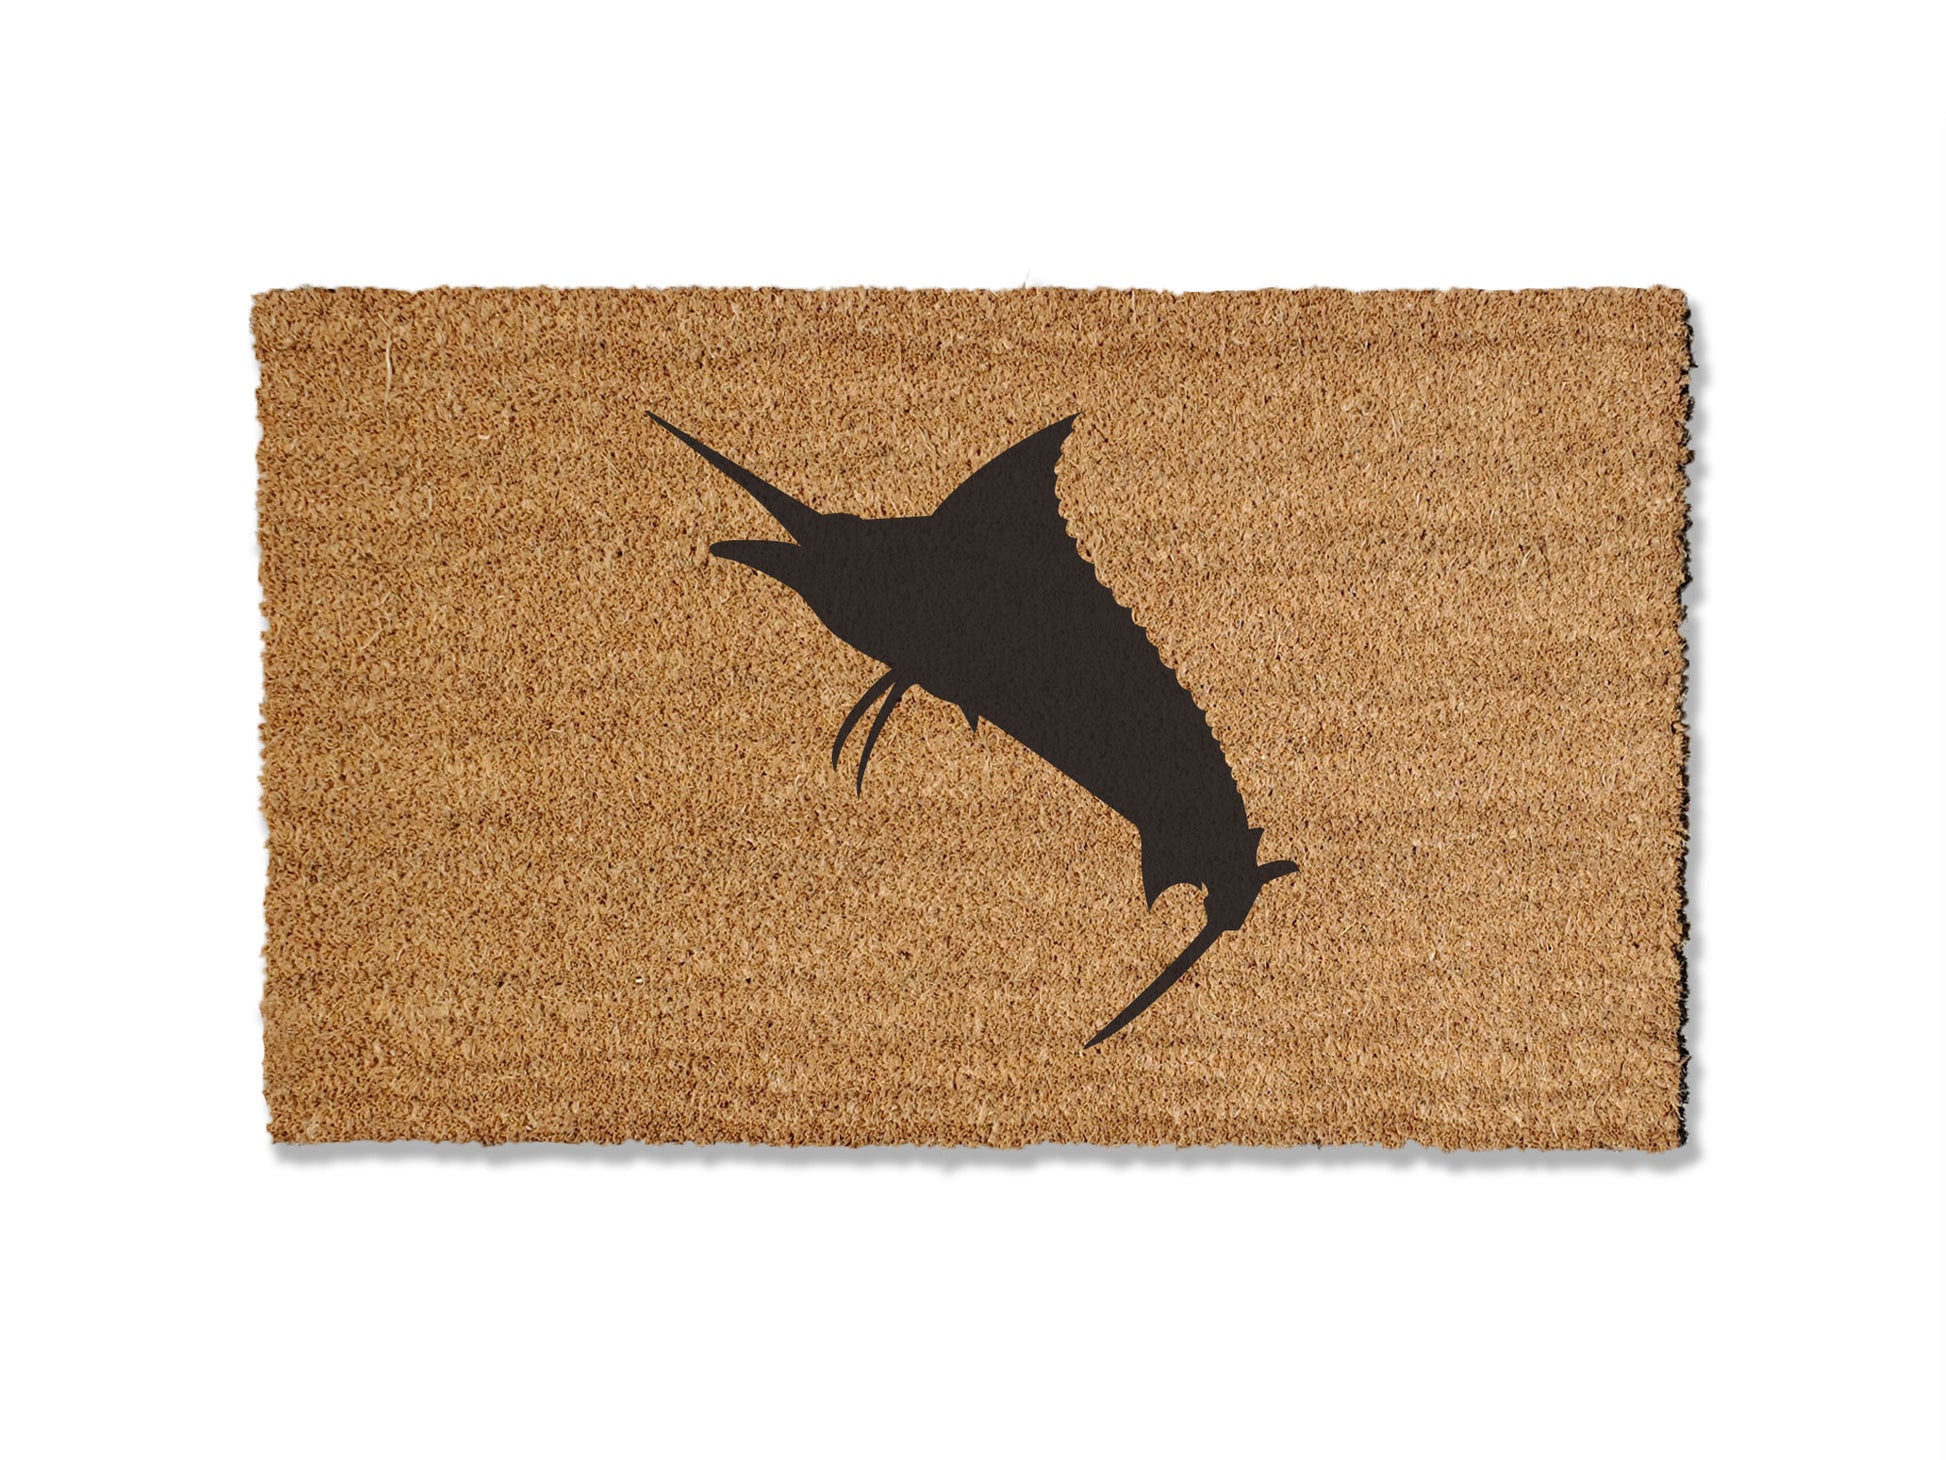 Marlin Doormat, Fishing Doormat – UncommonDoormats